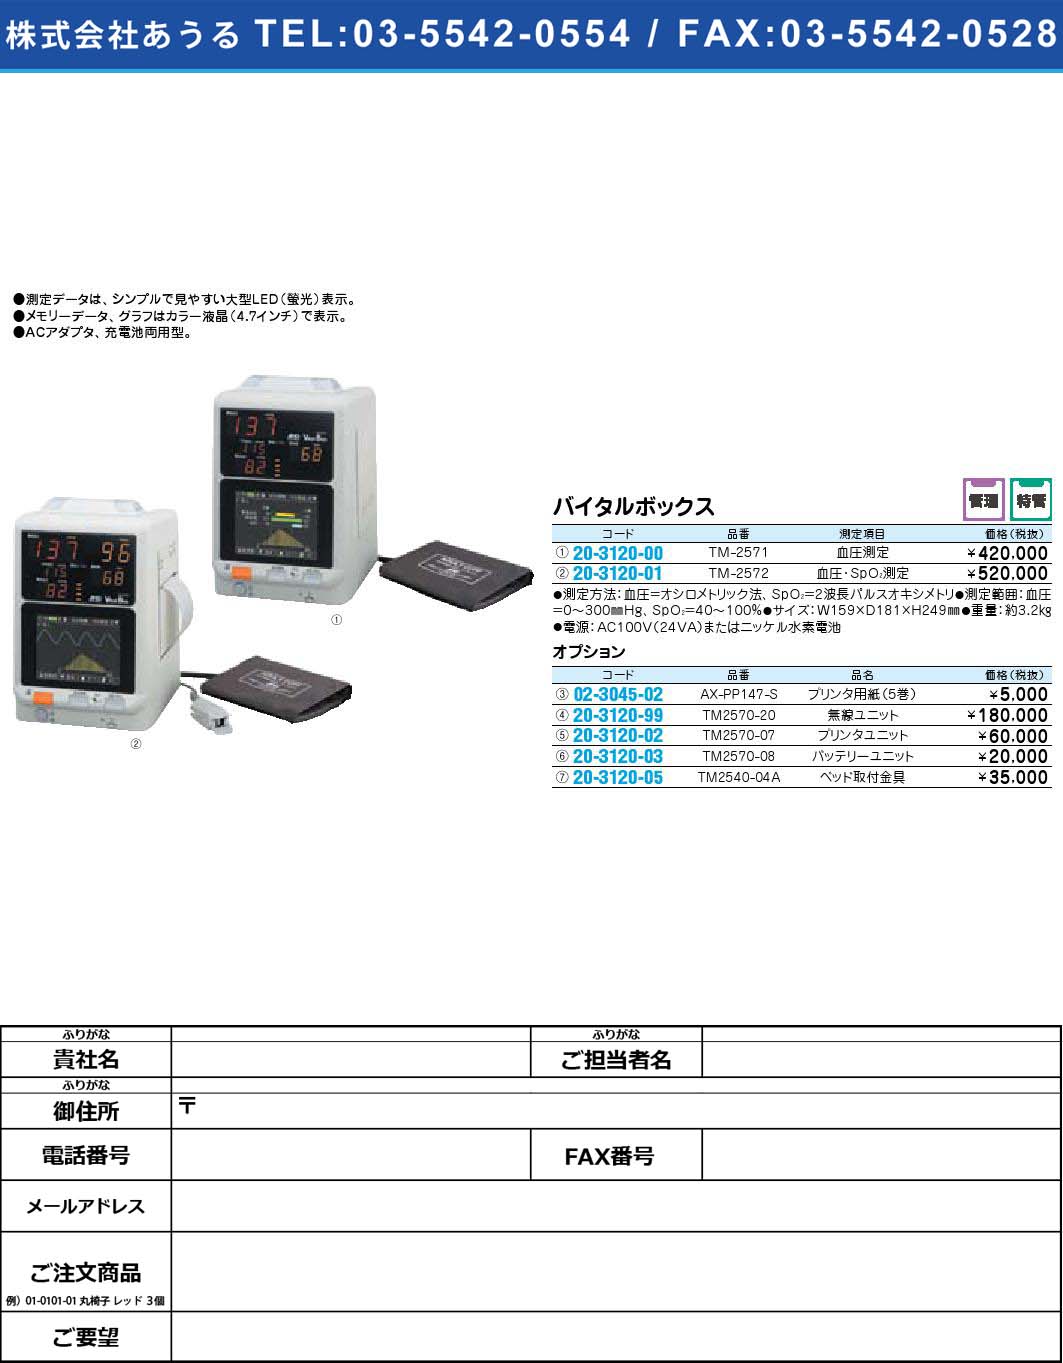 バイタルボックス オプション TM2570-20【1単位】(20-3120-99)